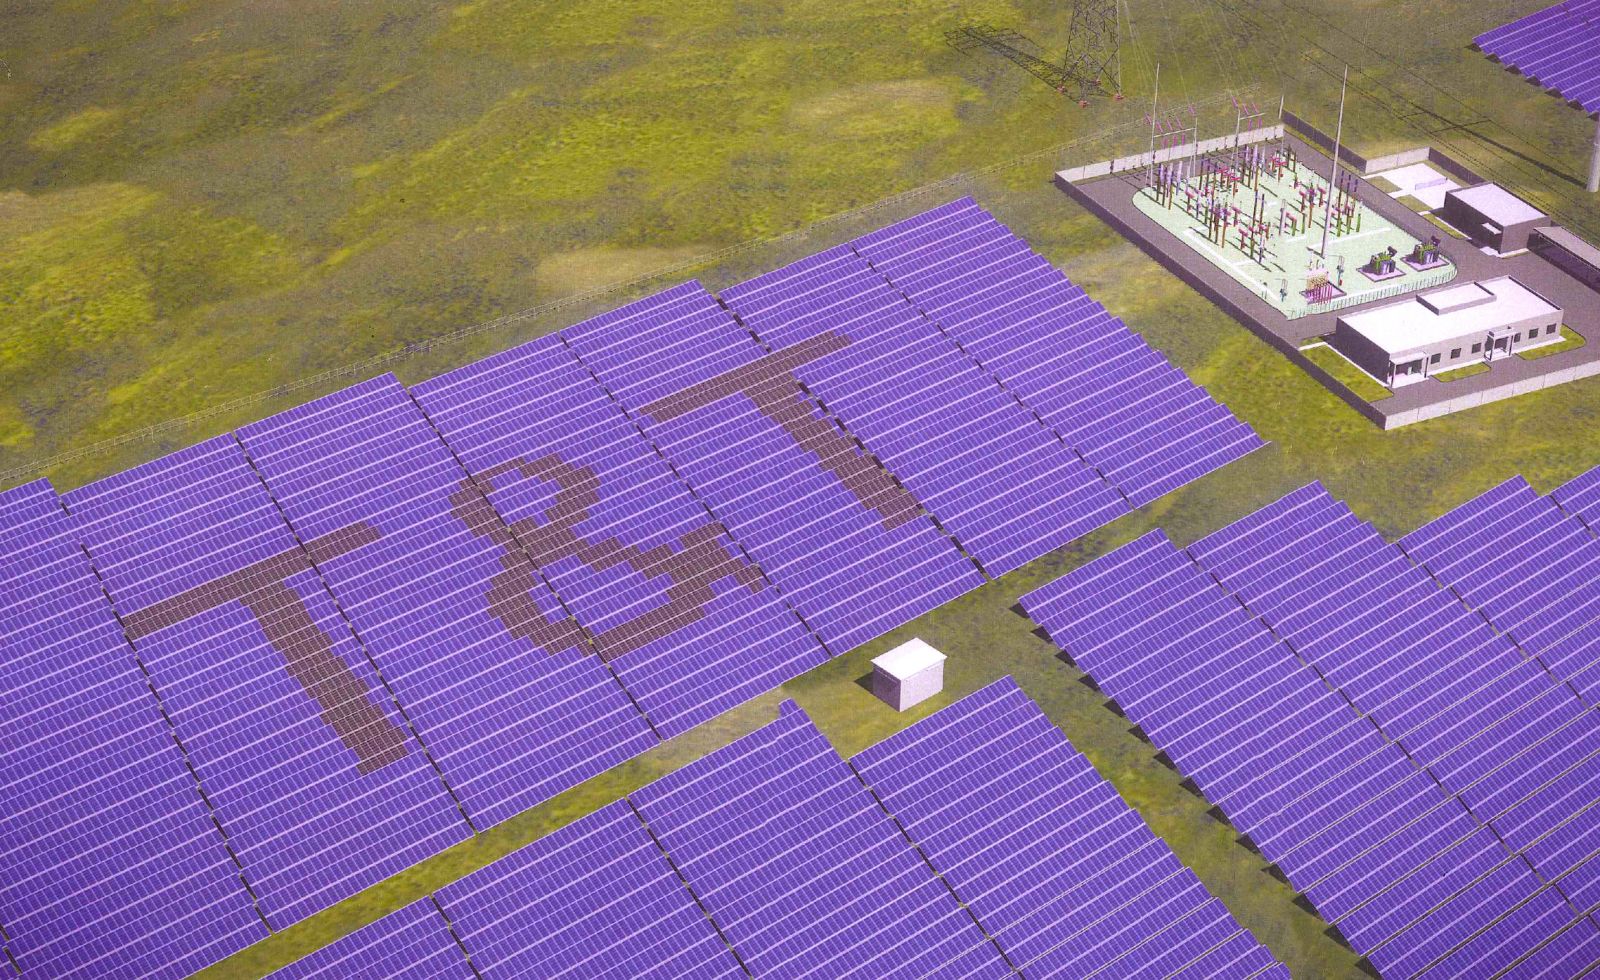 Nhà máy điện mặt trời Phước Ninh sẽ chính thức vận hành từ tháng 06/2020